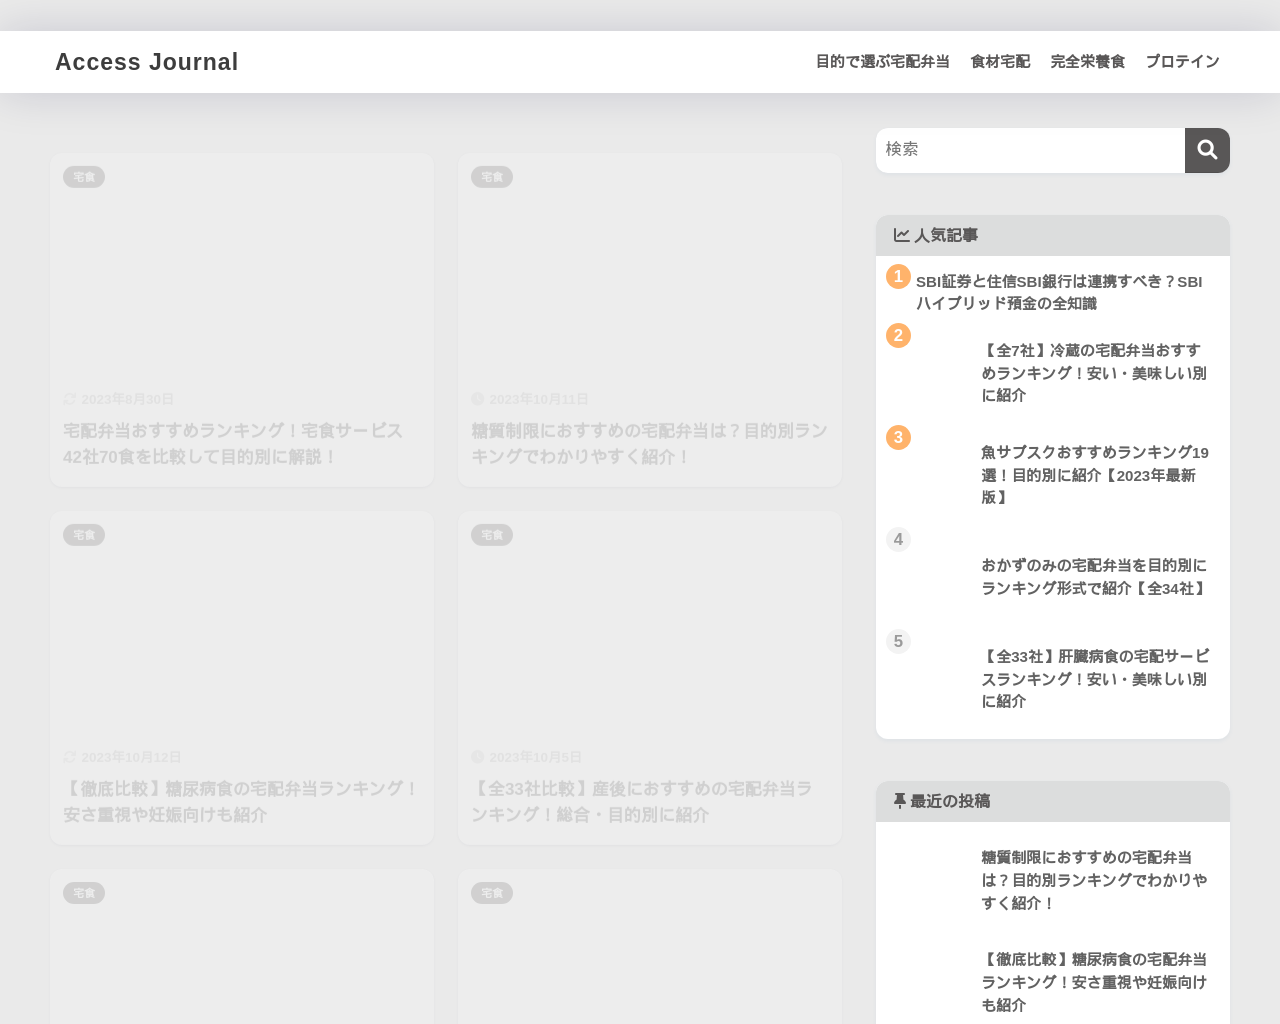 accessjournal.jp